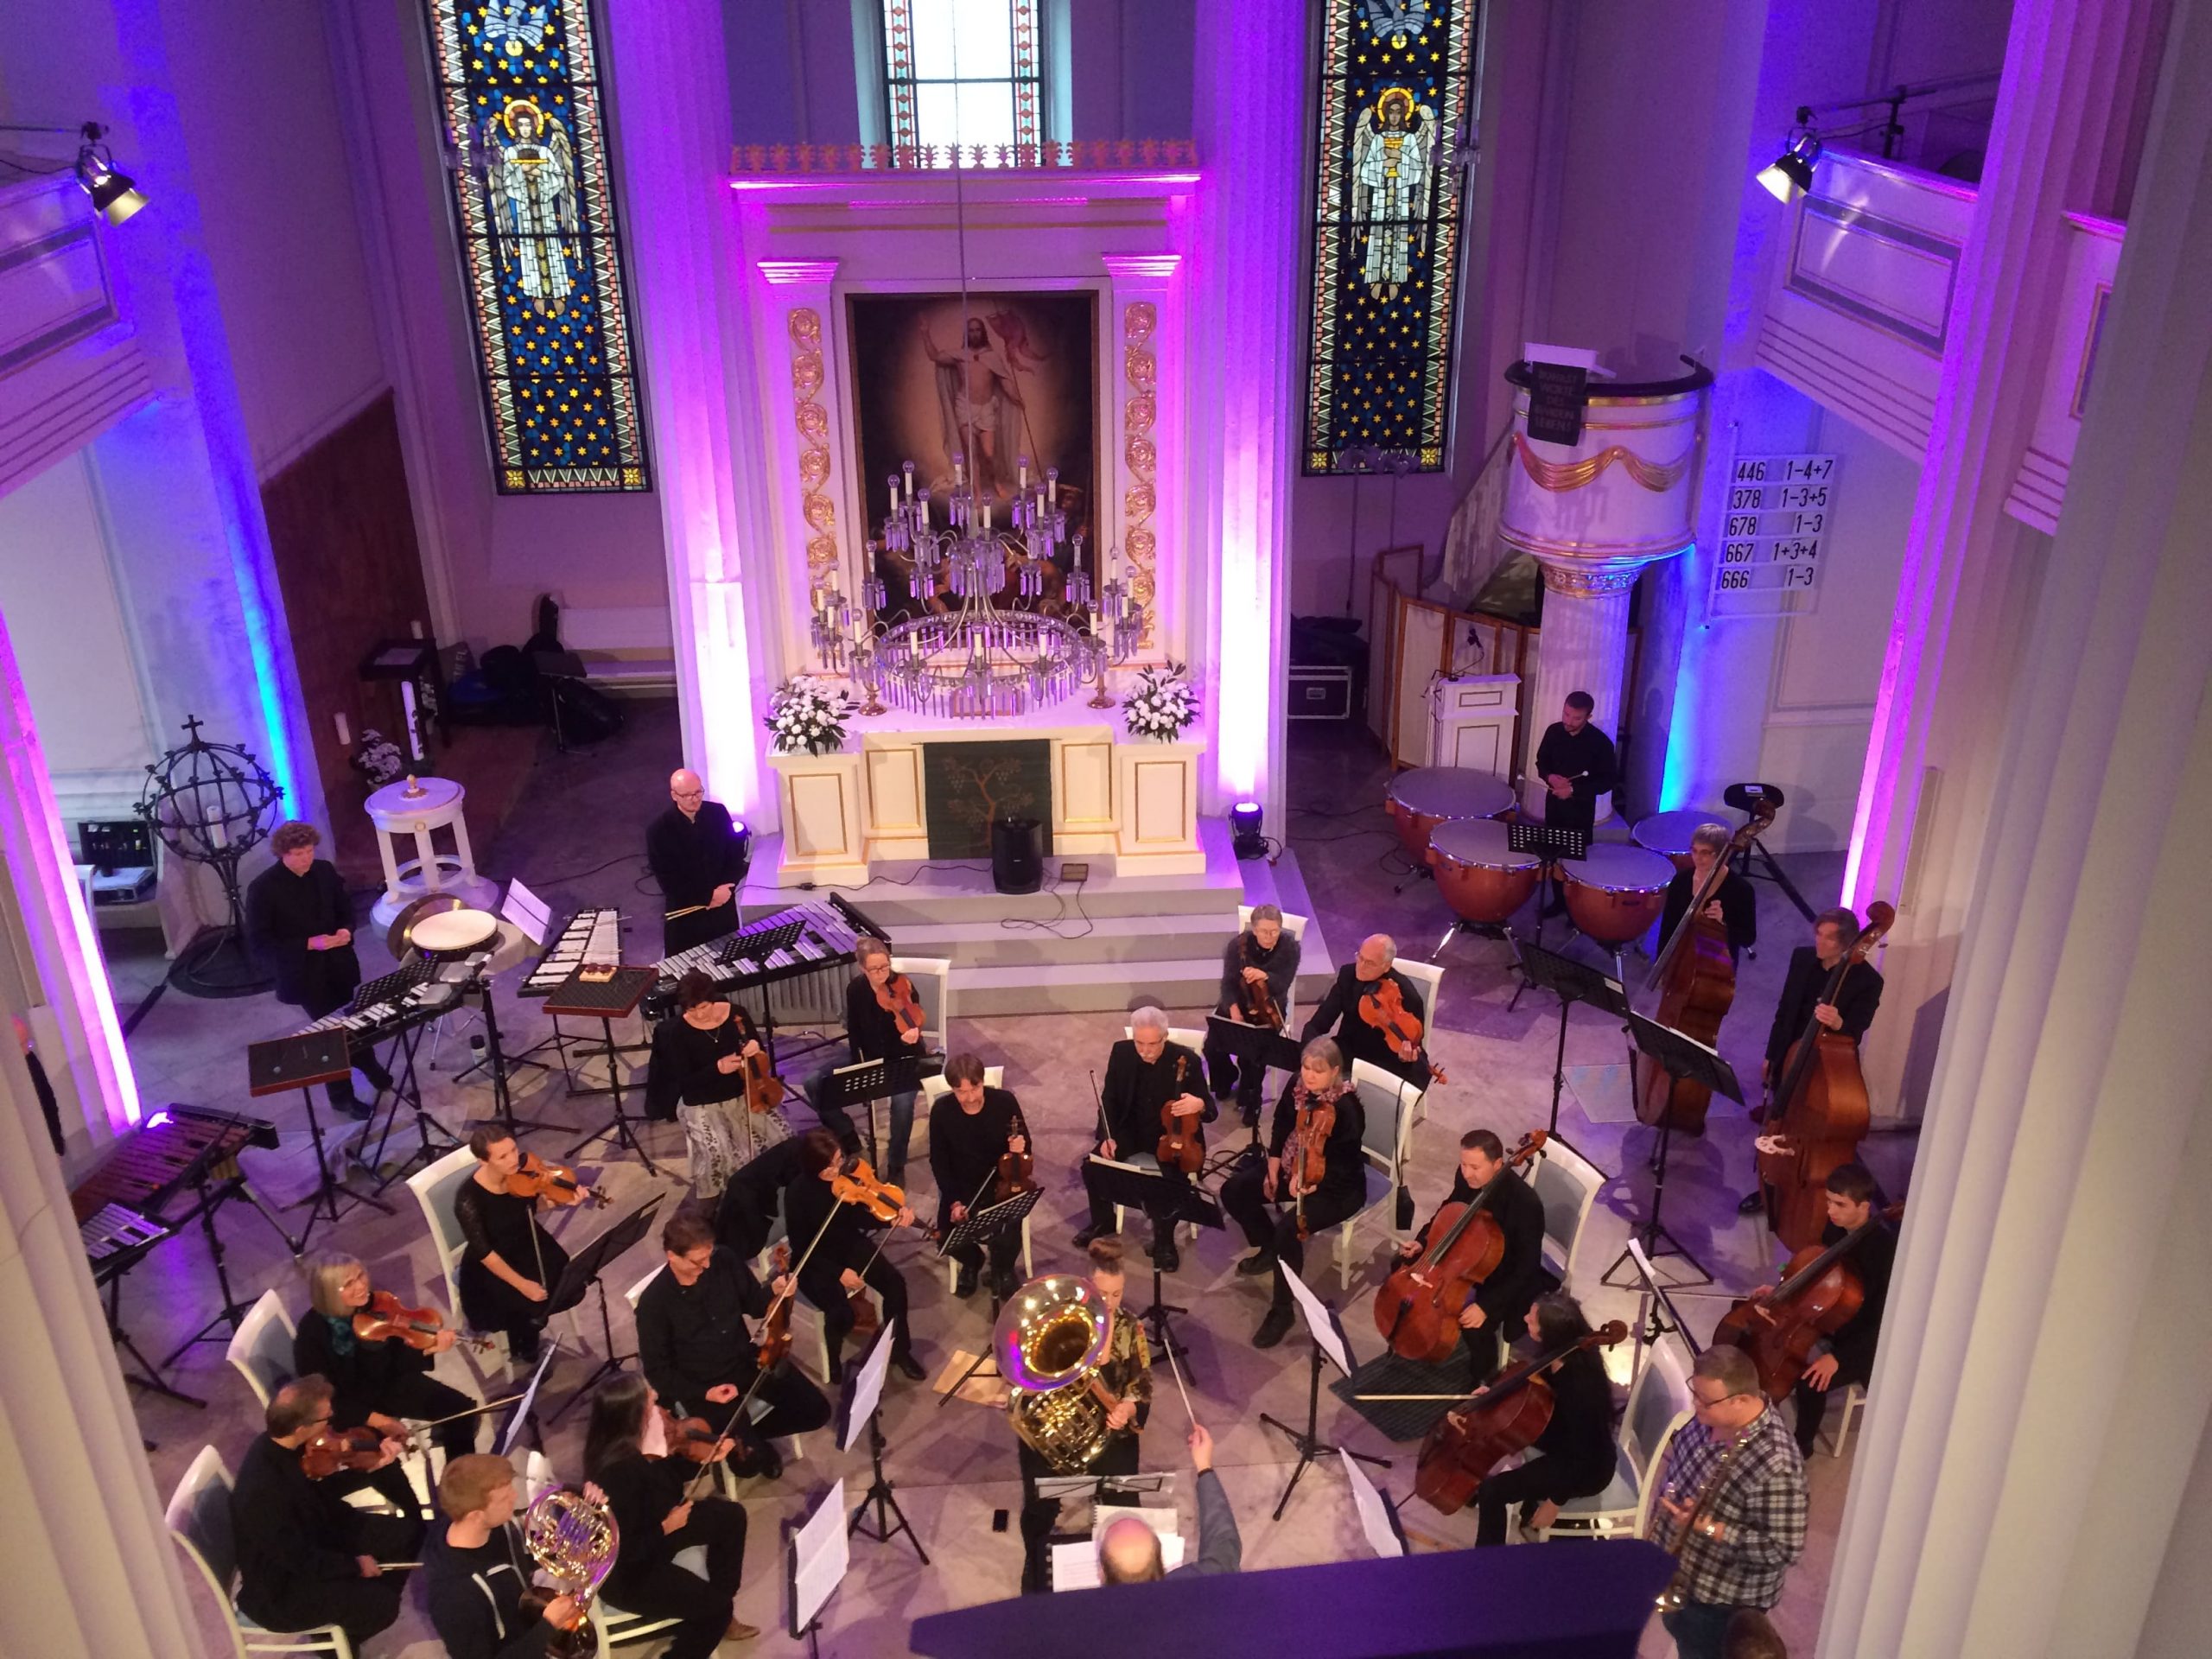 Ein Orchester spielt im Kirchenschiff, das durch die Beleuchtung ein tolles Ambiente ergibt.